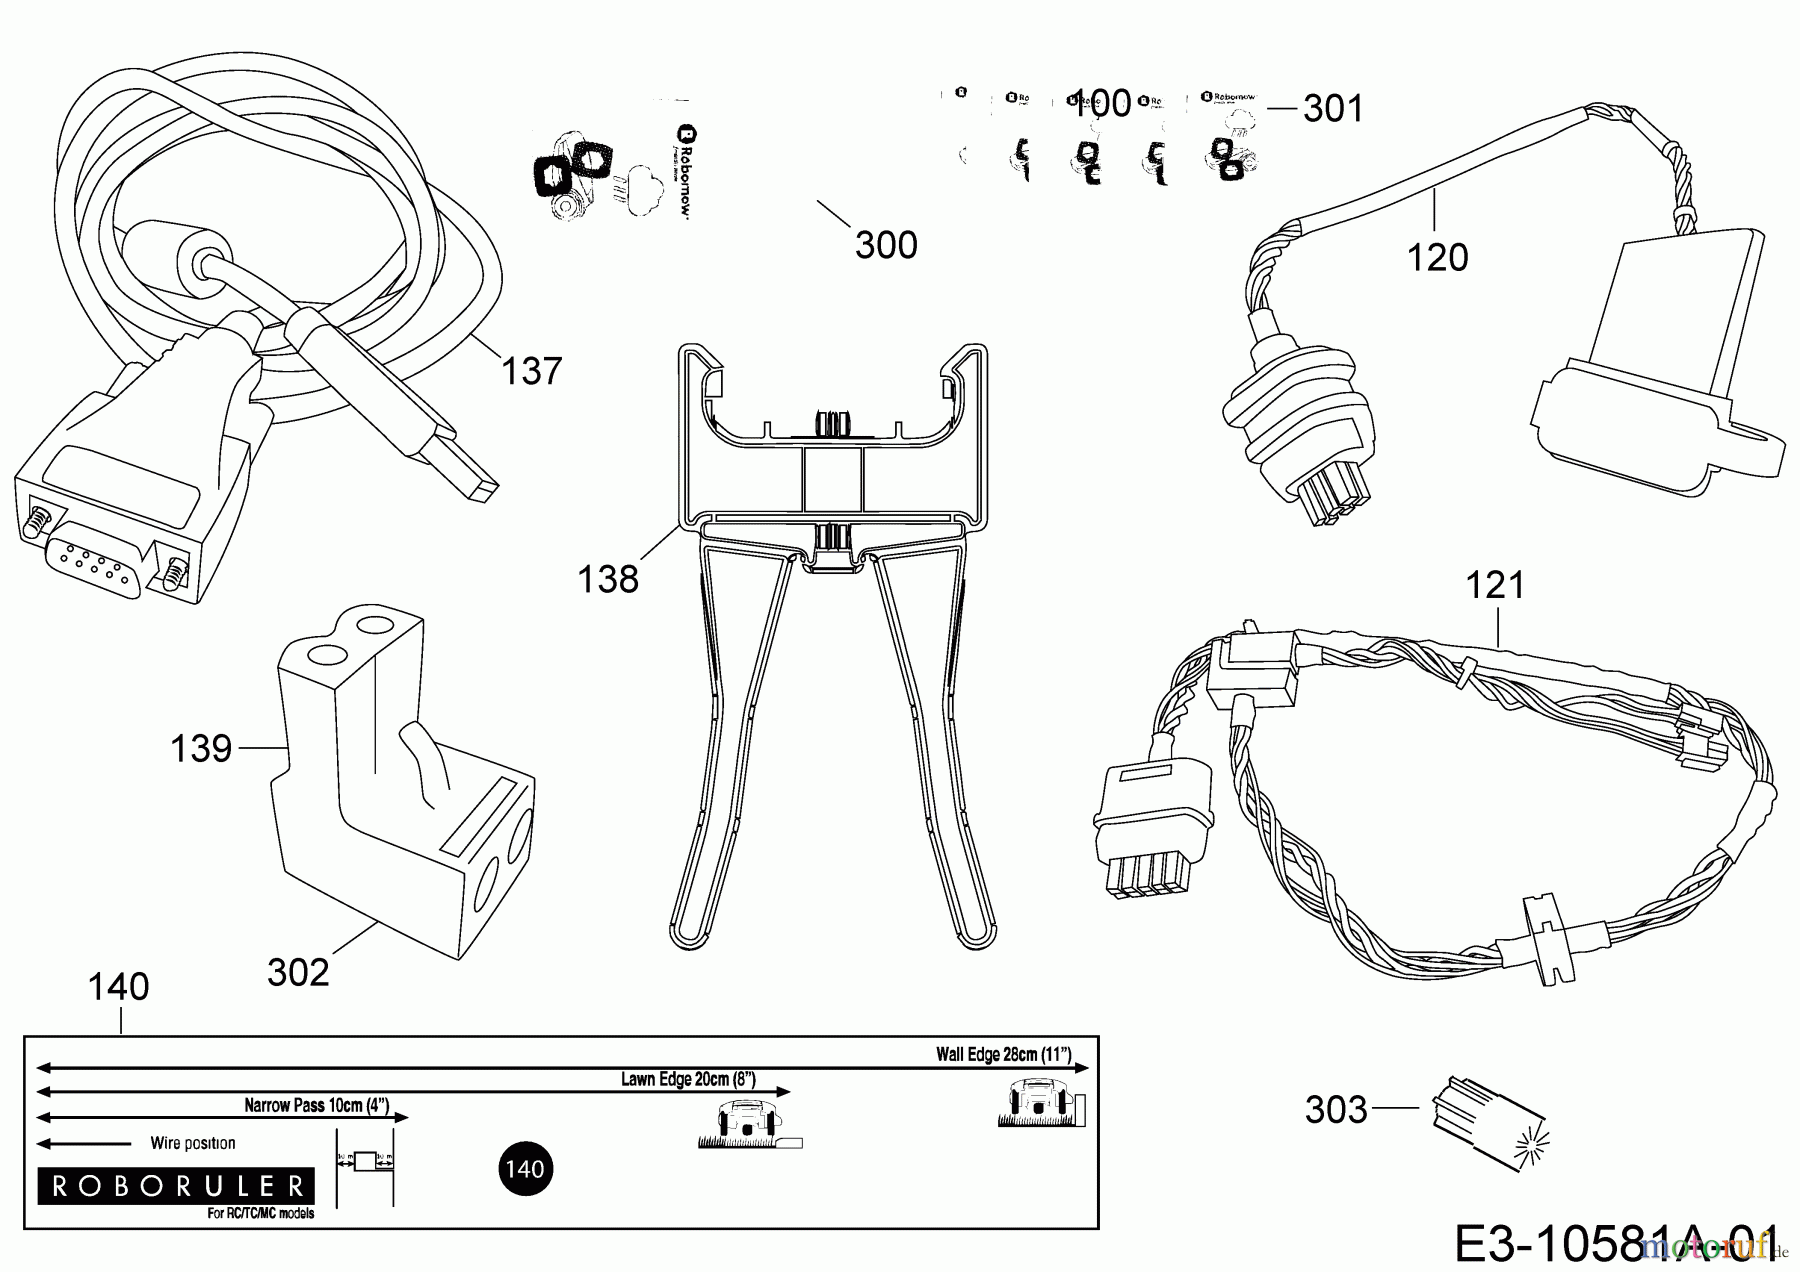  Robomow Mähroboter RC306 PRD7006BG  (2015) Kabel, Kabelanschluß, Regensensor, Werkzeug